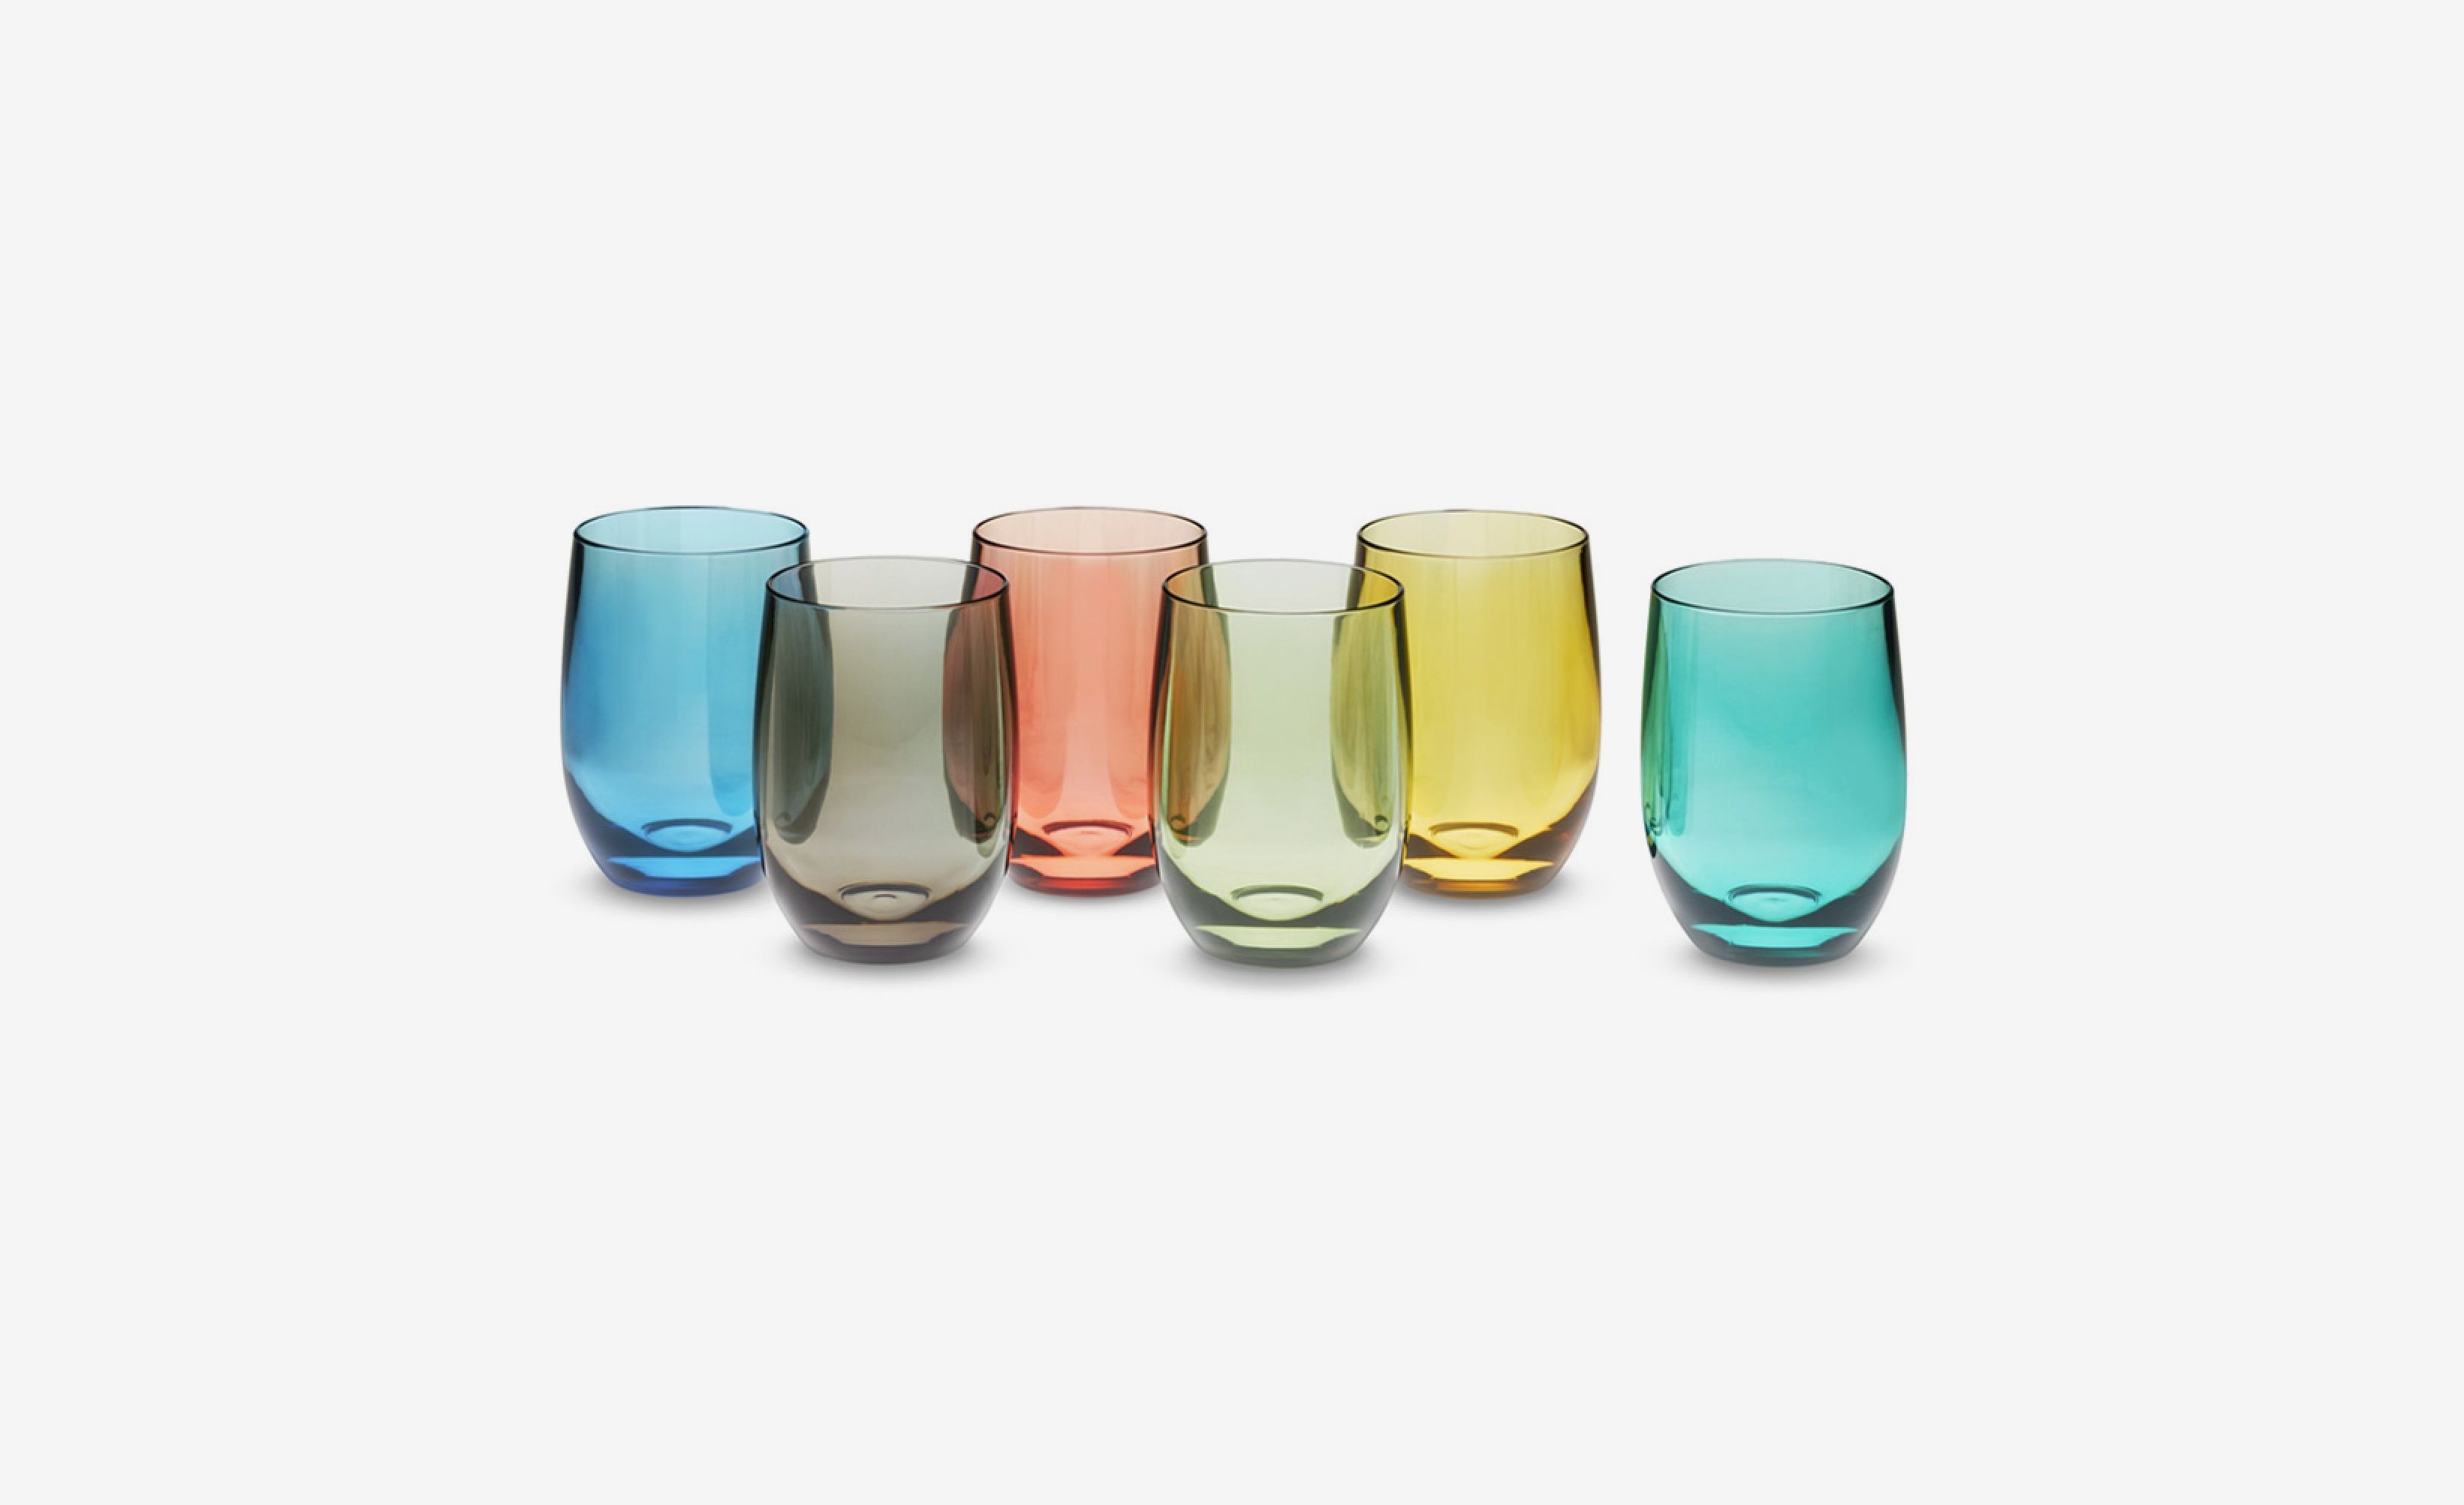 Muldale Boho Acrylic Wine Glasses Dishwasher Safe - Large 15 oz Set of 6  Multi-Colored Plastic Goble…See more Muldale Boho Acrylic Wine Glasses